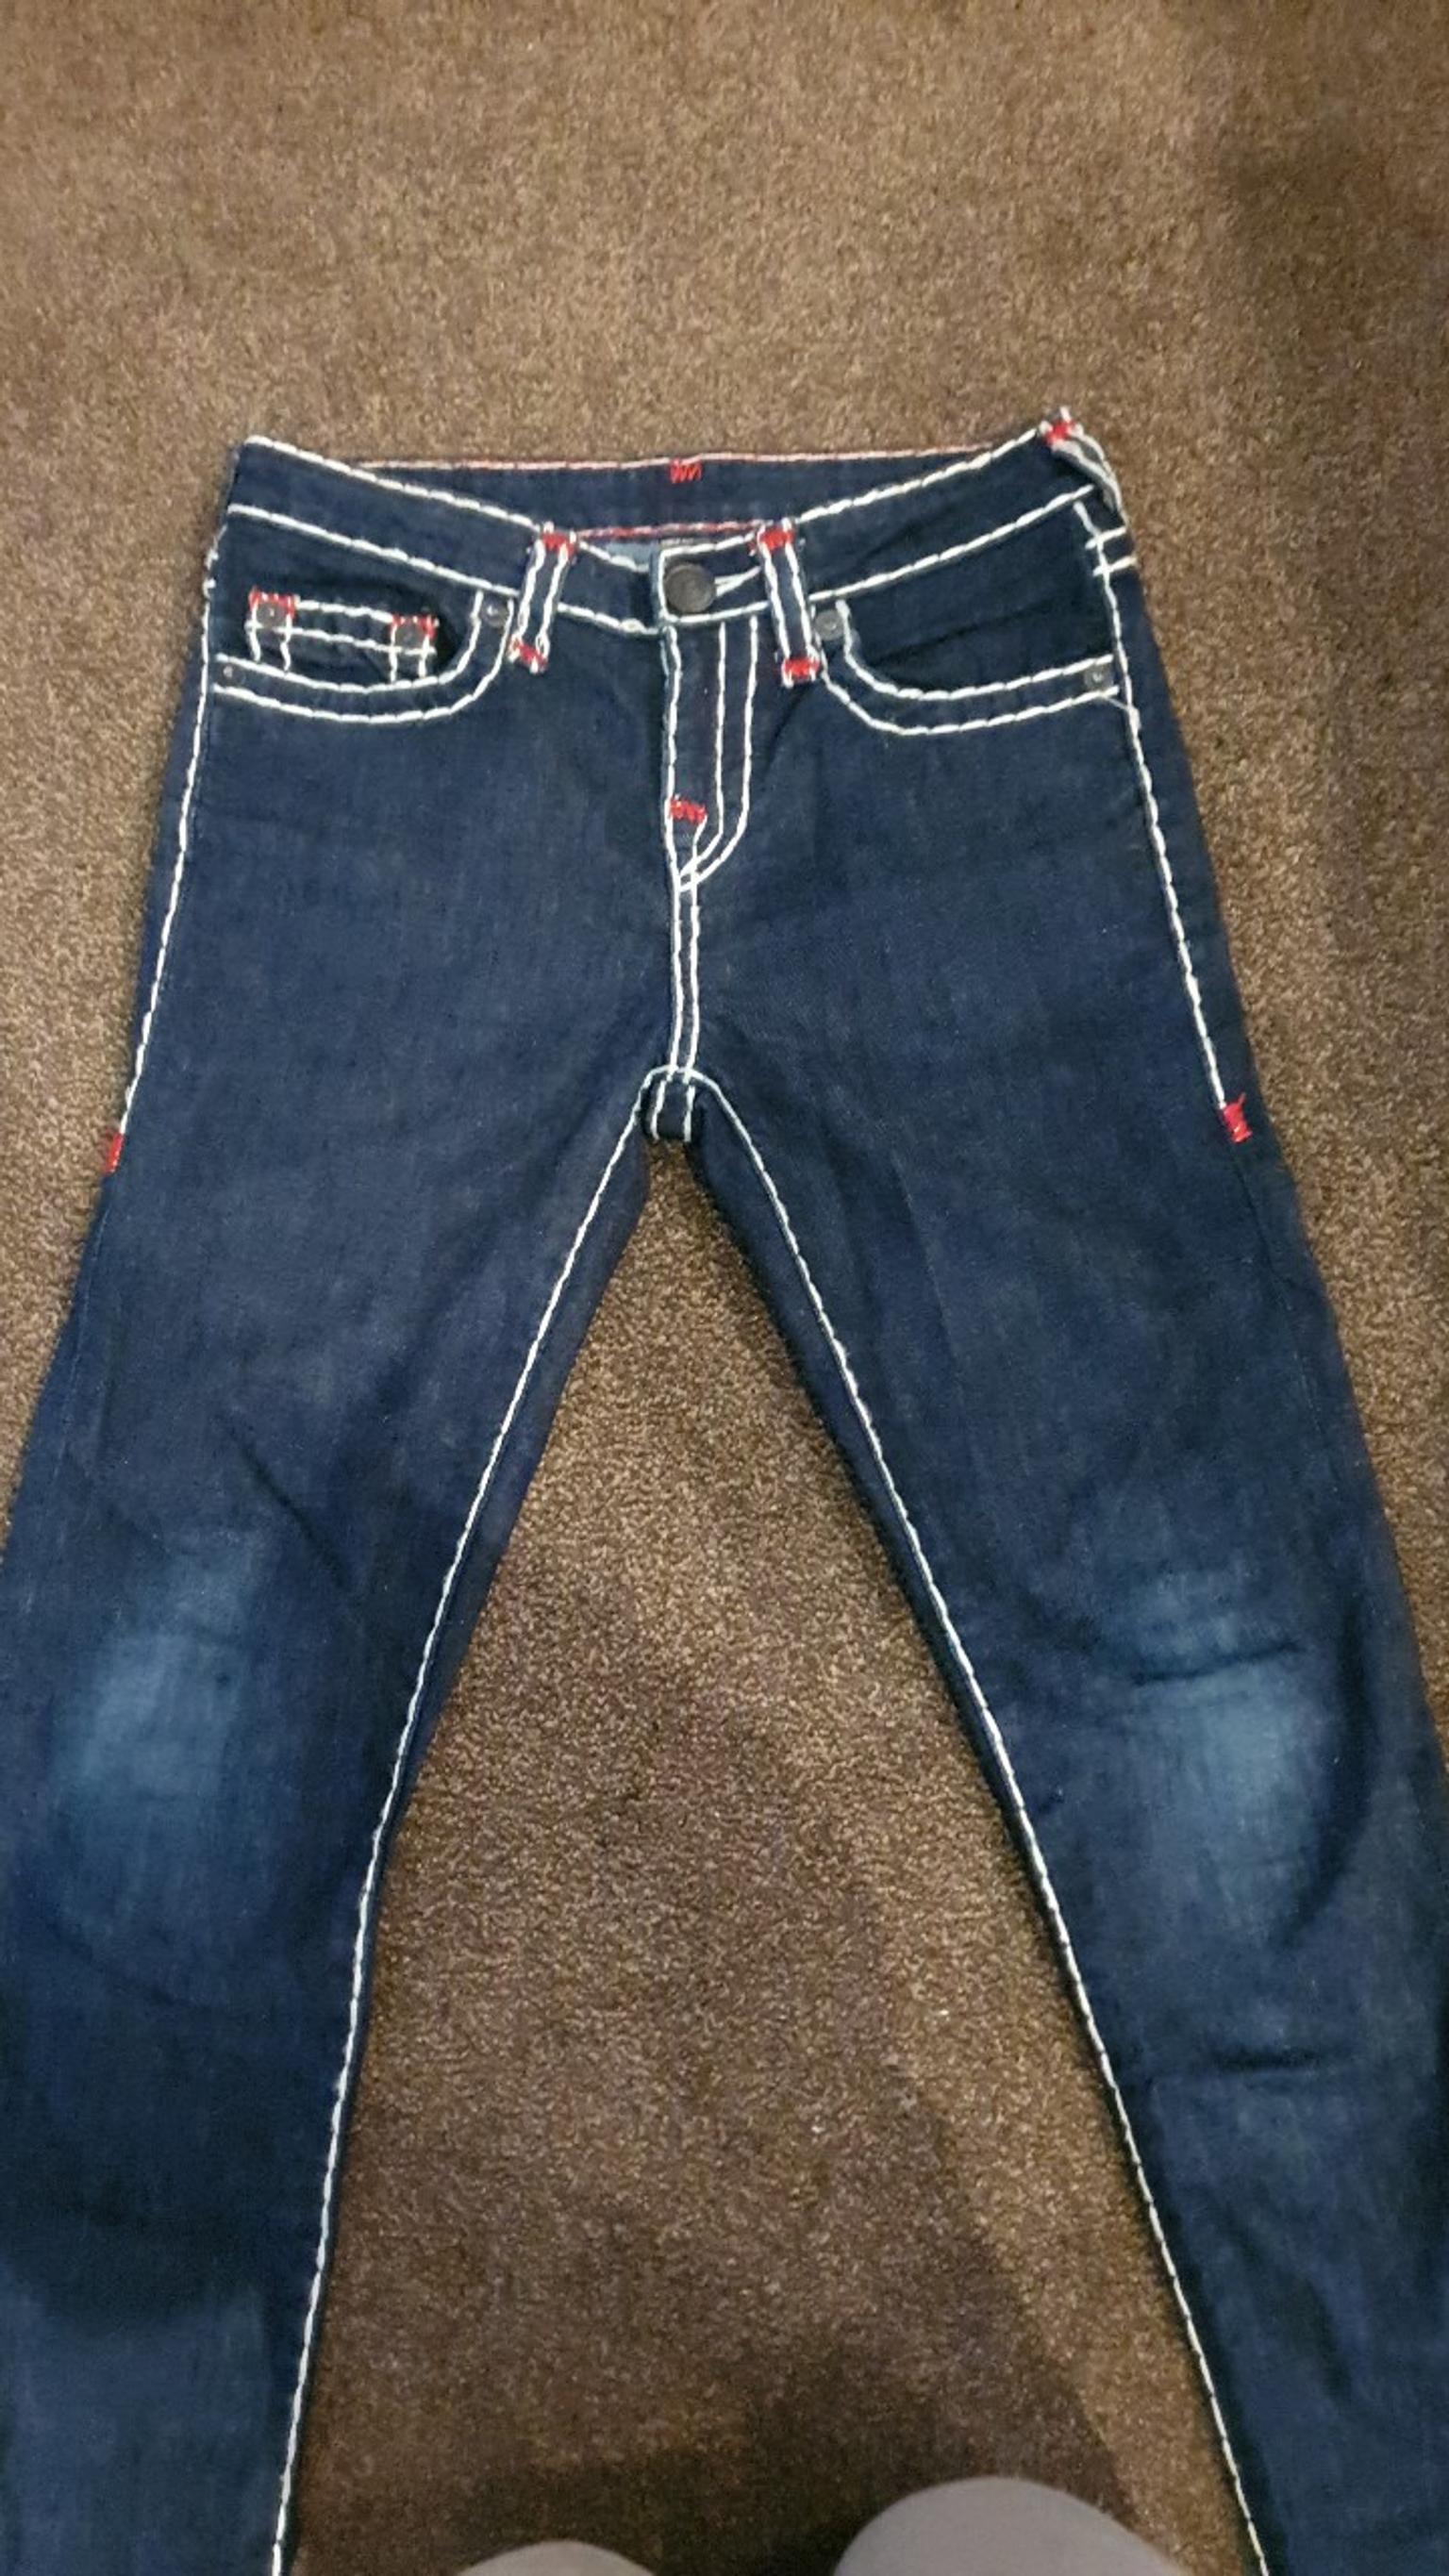 true religion jeans dark blue white stitching